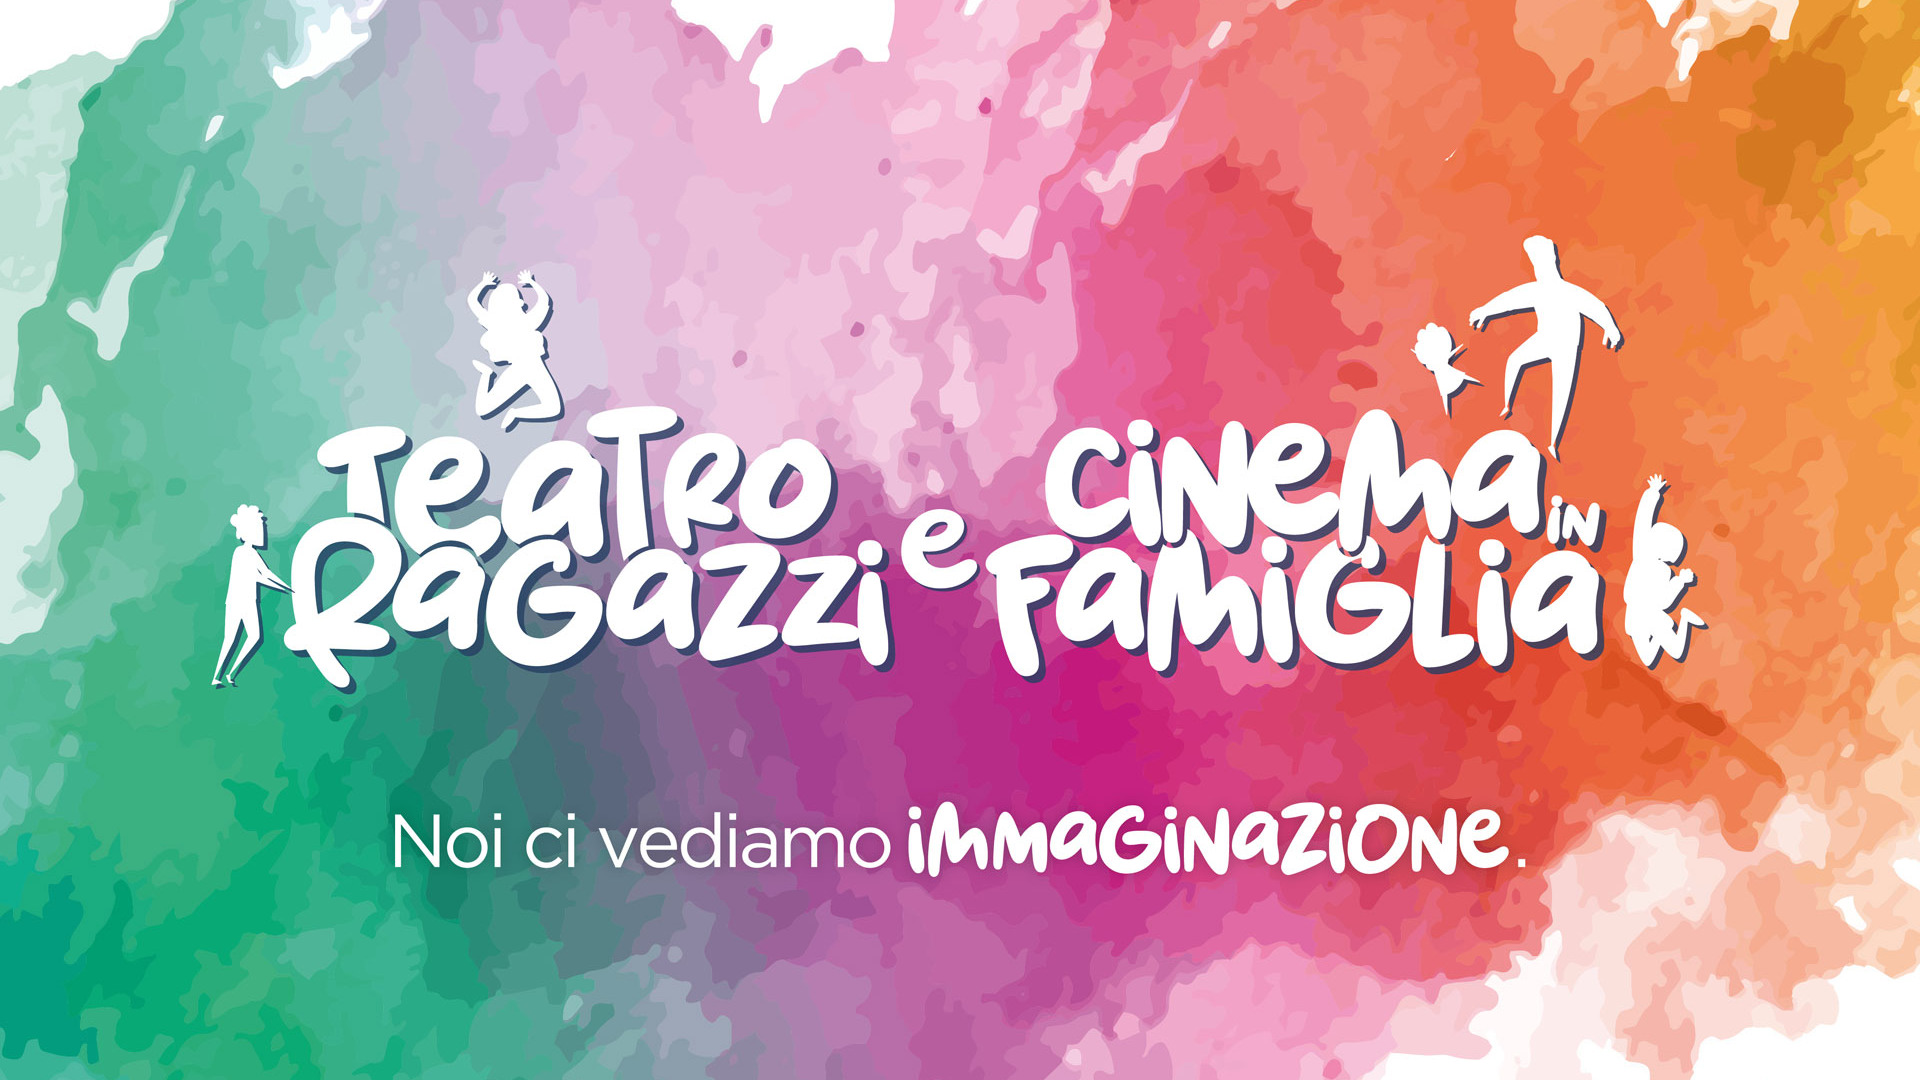 Teatro Ragazzi e Cinema in Famiglia: al Politeama da novembre 2022 a marzo 2023